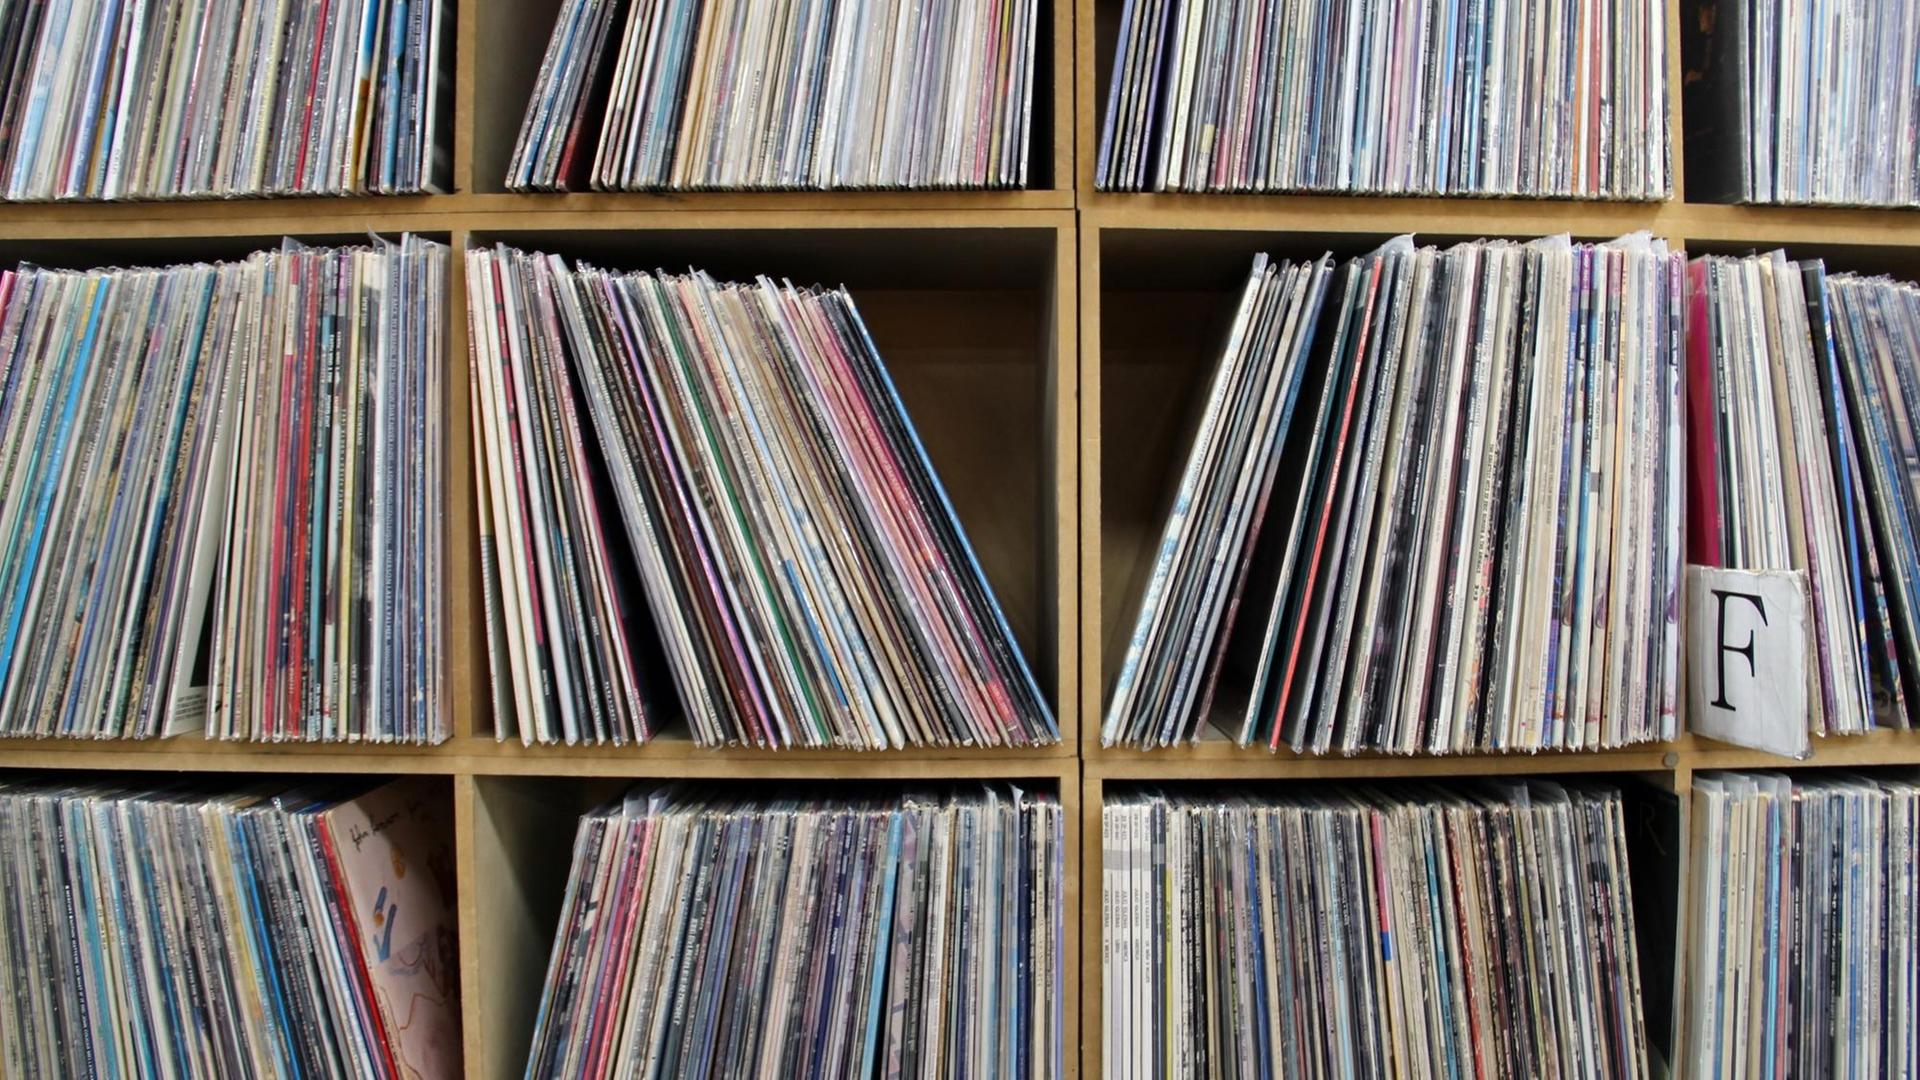 Schallplatten (LPs) in einem Plattenladen 